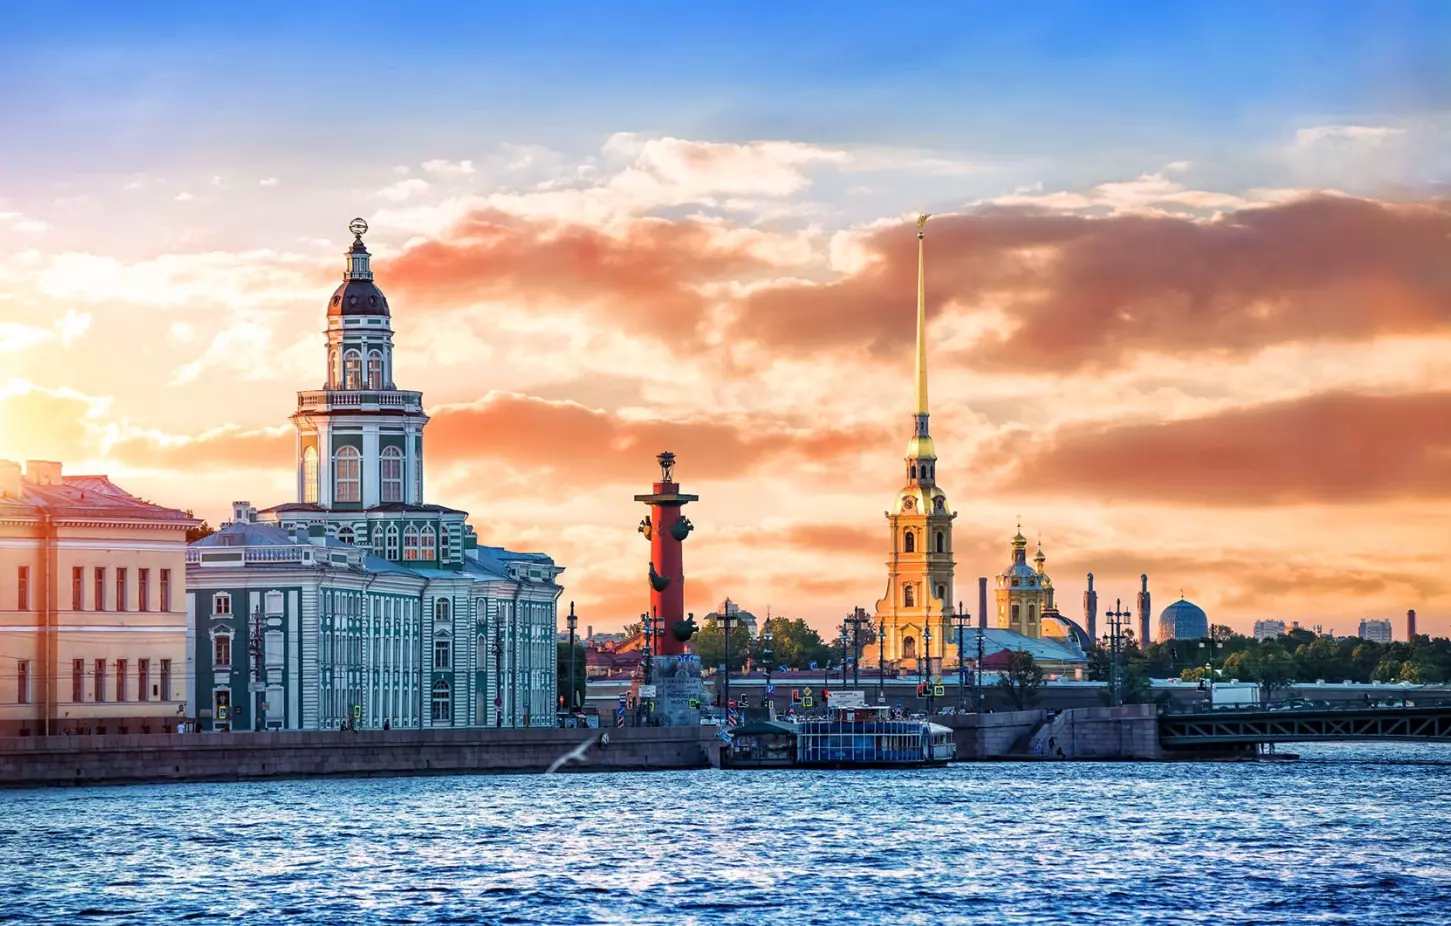 Санкт-Петербург вошел в тройку городов для спонтанных путешествий